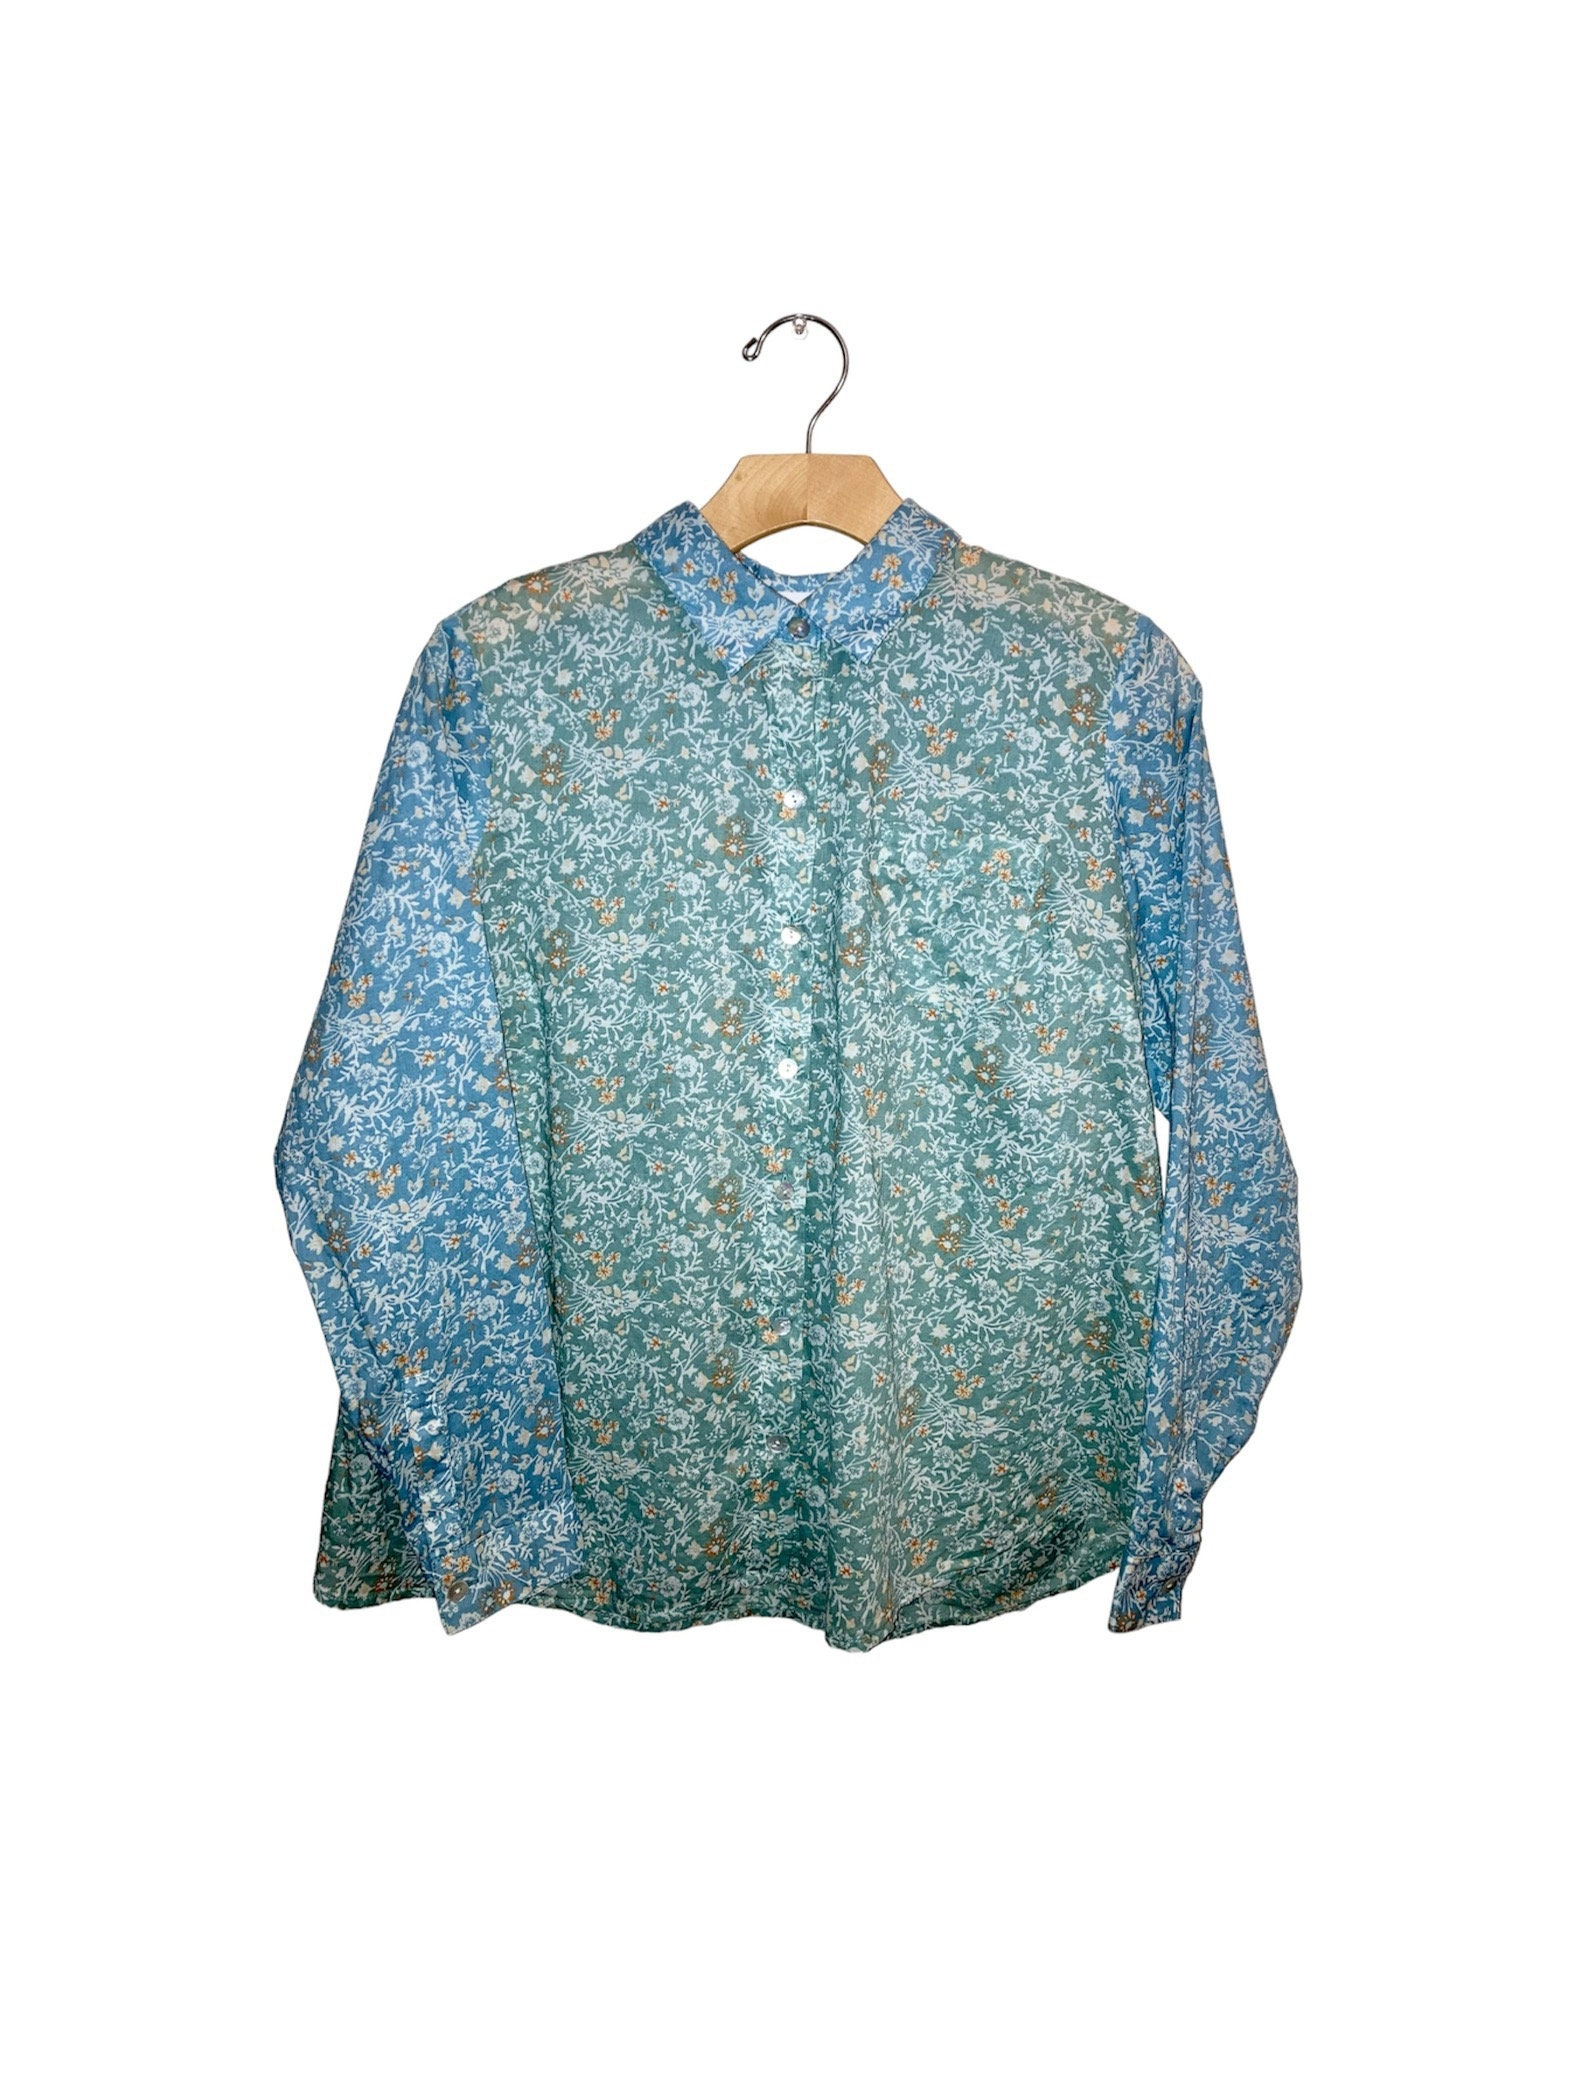 J Jill Corduroy Shirt Long Sleeve Button Up Blue Pockets Women Medium  Petite